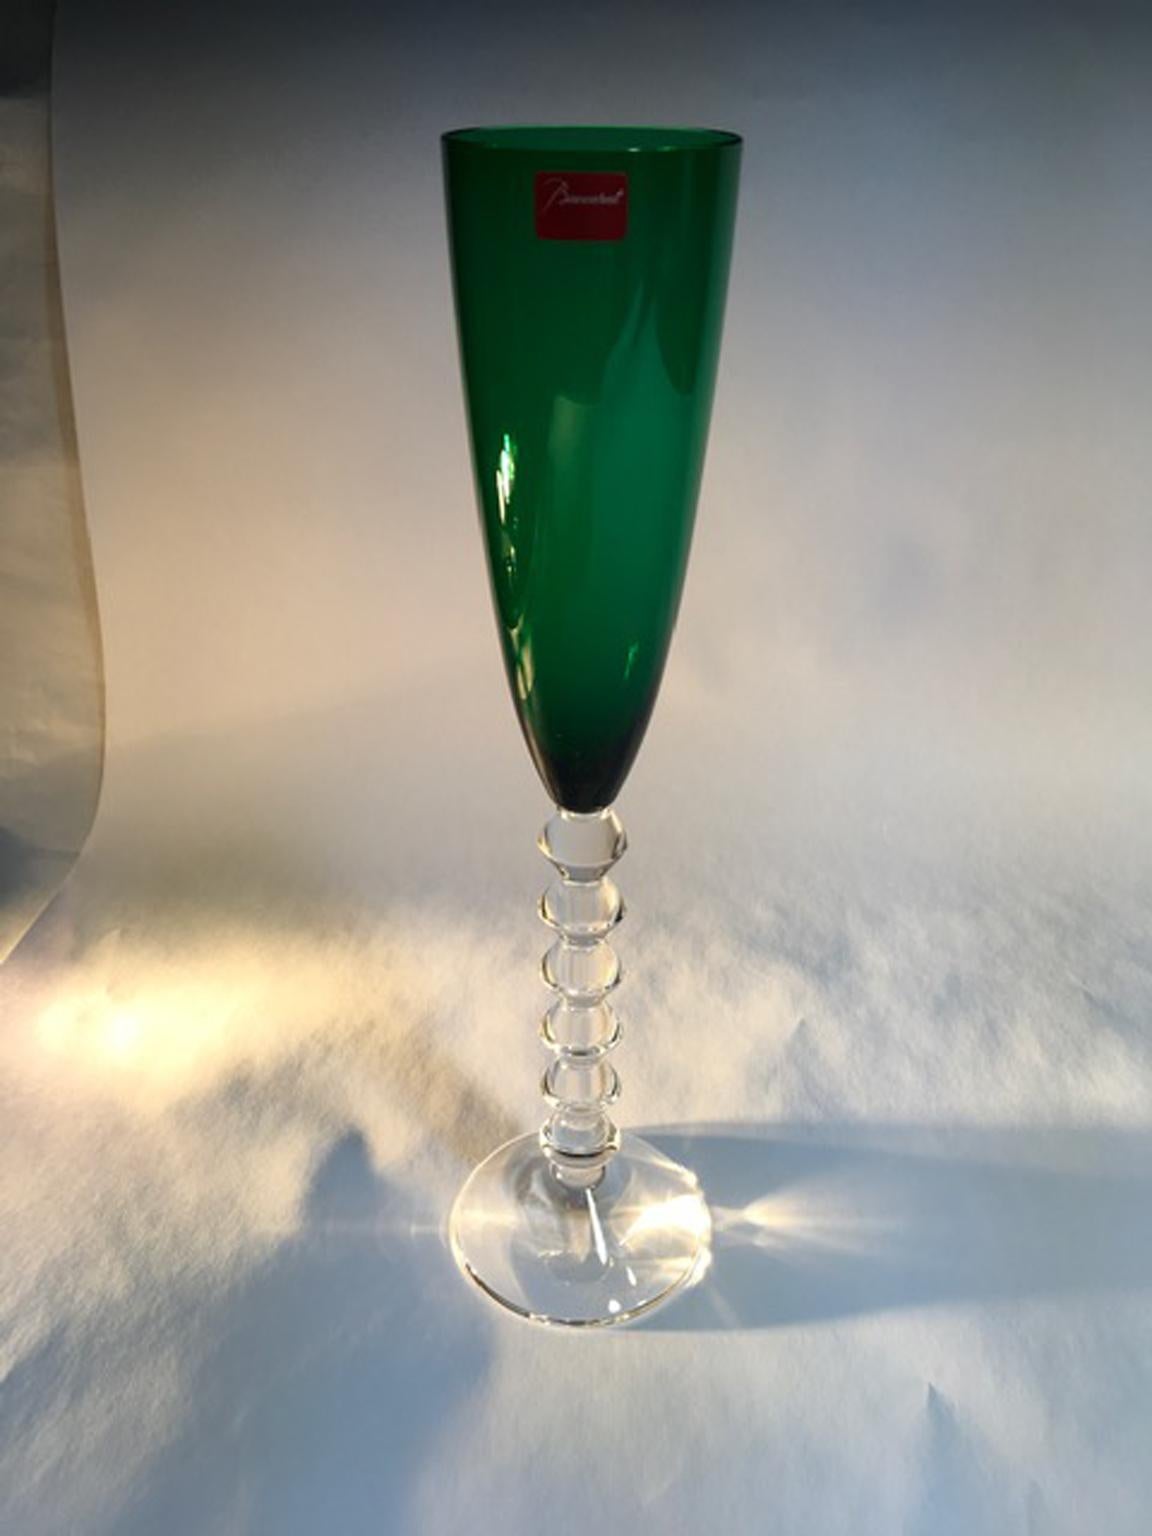 Baccarat Green Crystal Goblet, France 1